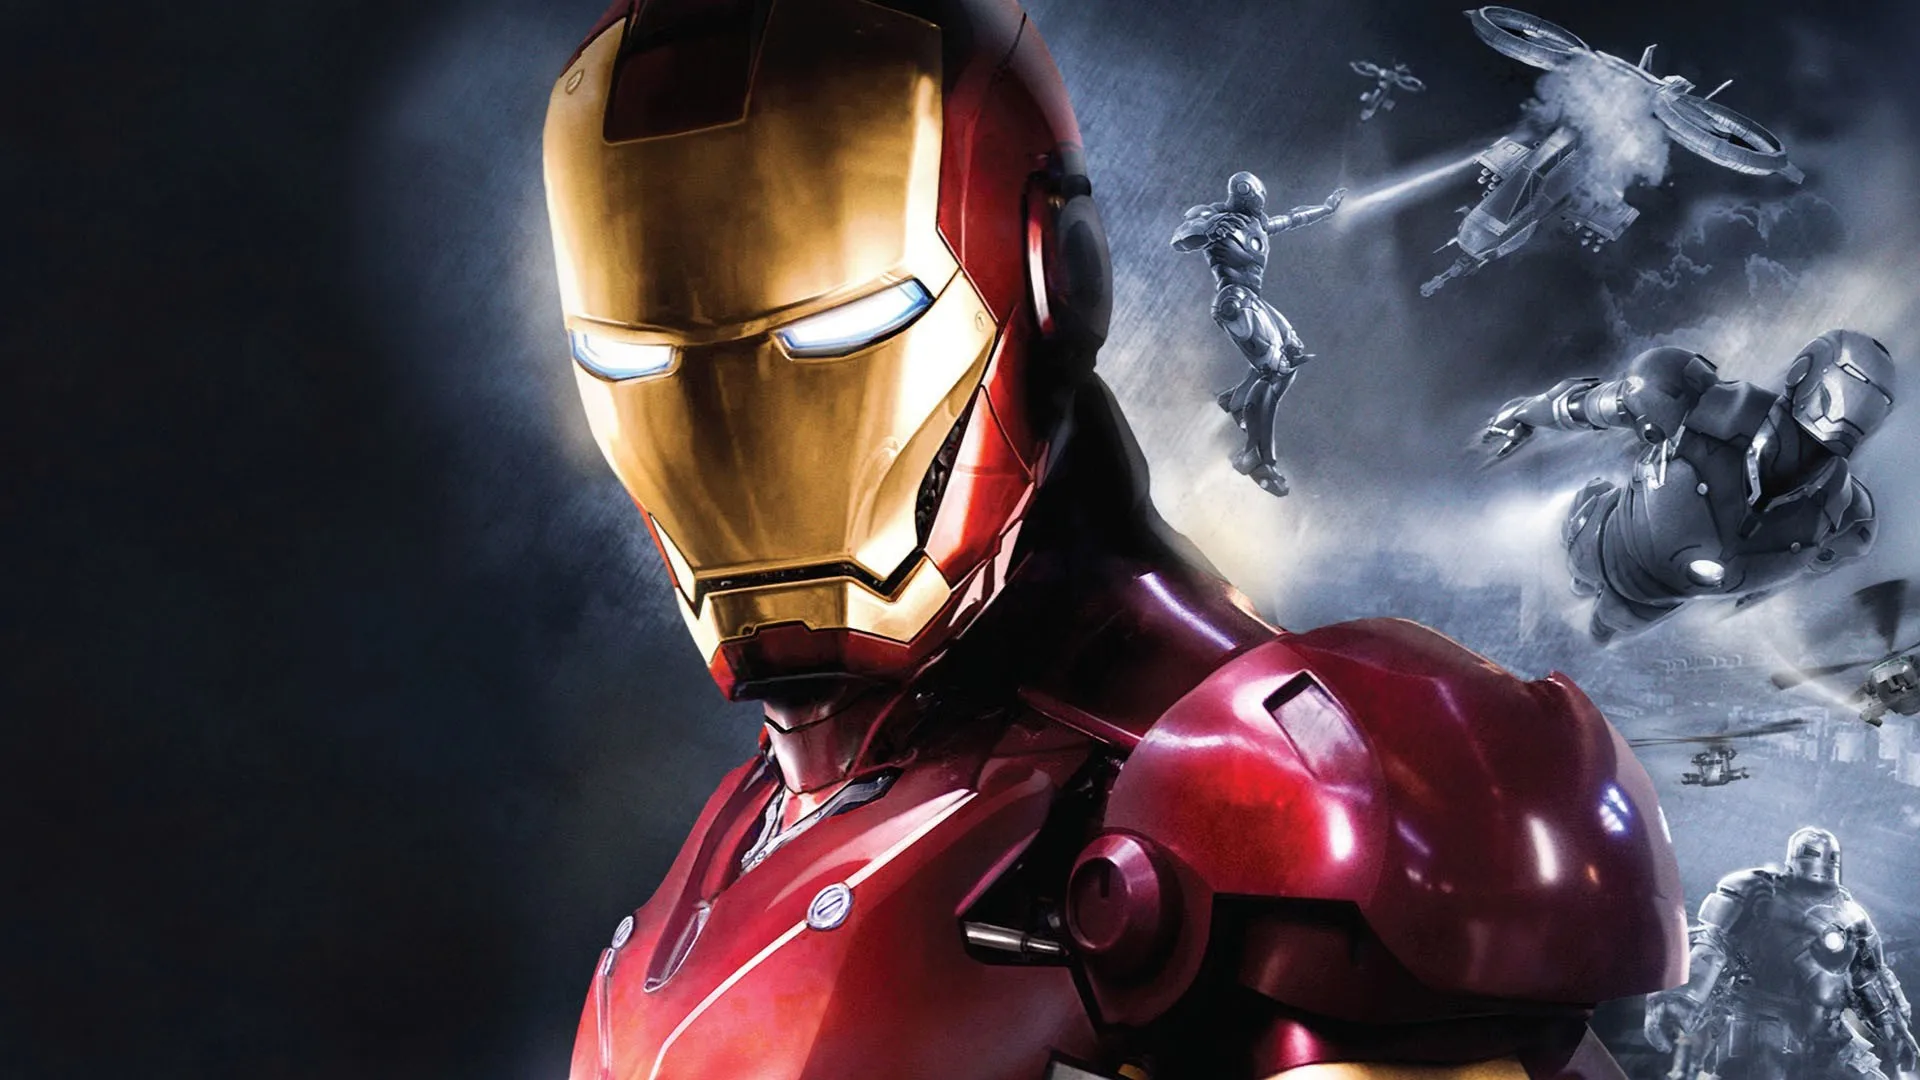 Брелок с Железным человеком Мстители alliance брелок Ironman с светодиодный кулон брелок свет и звук брелок ювелирные изделия для ребенка подарок